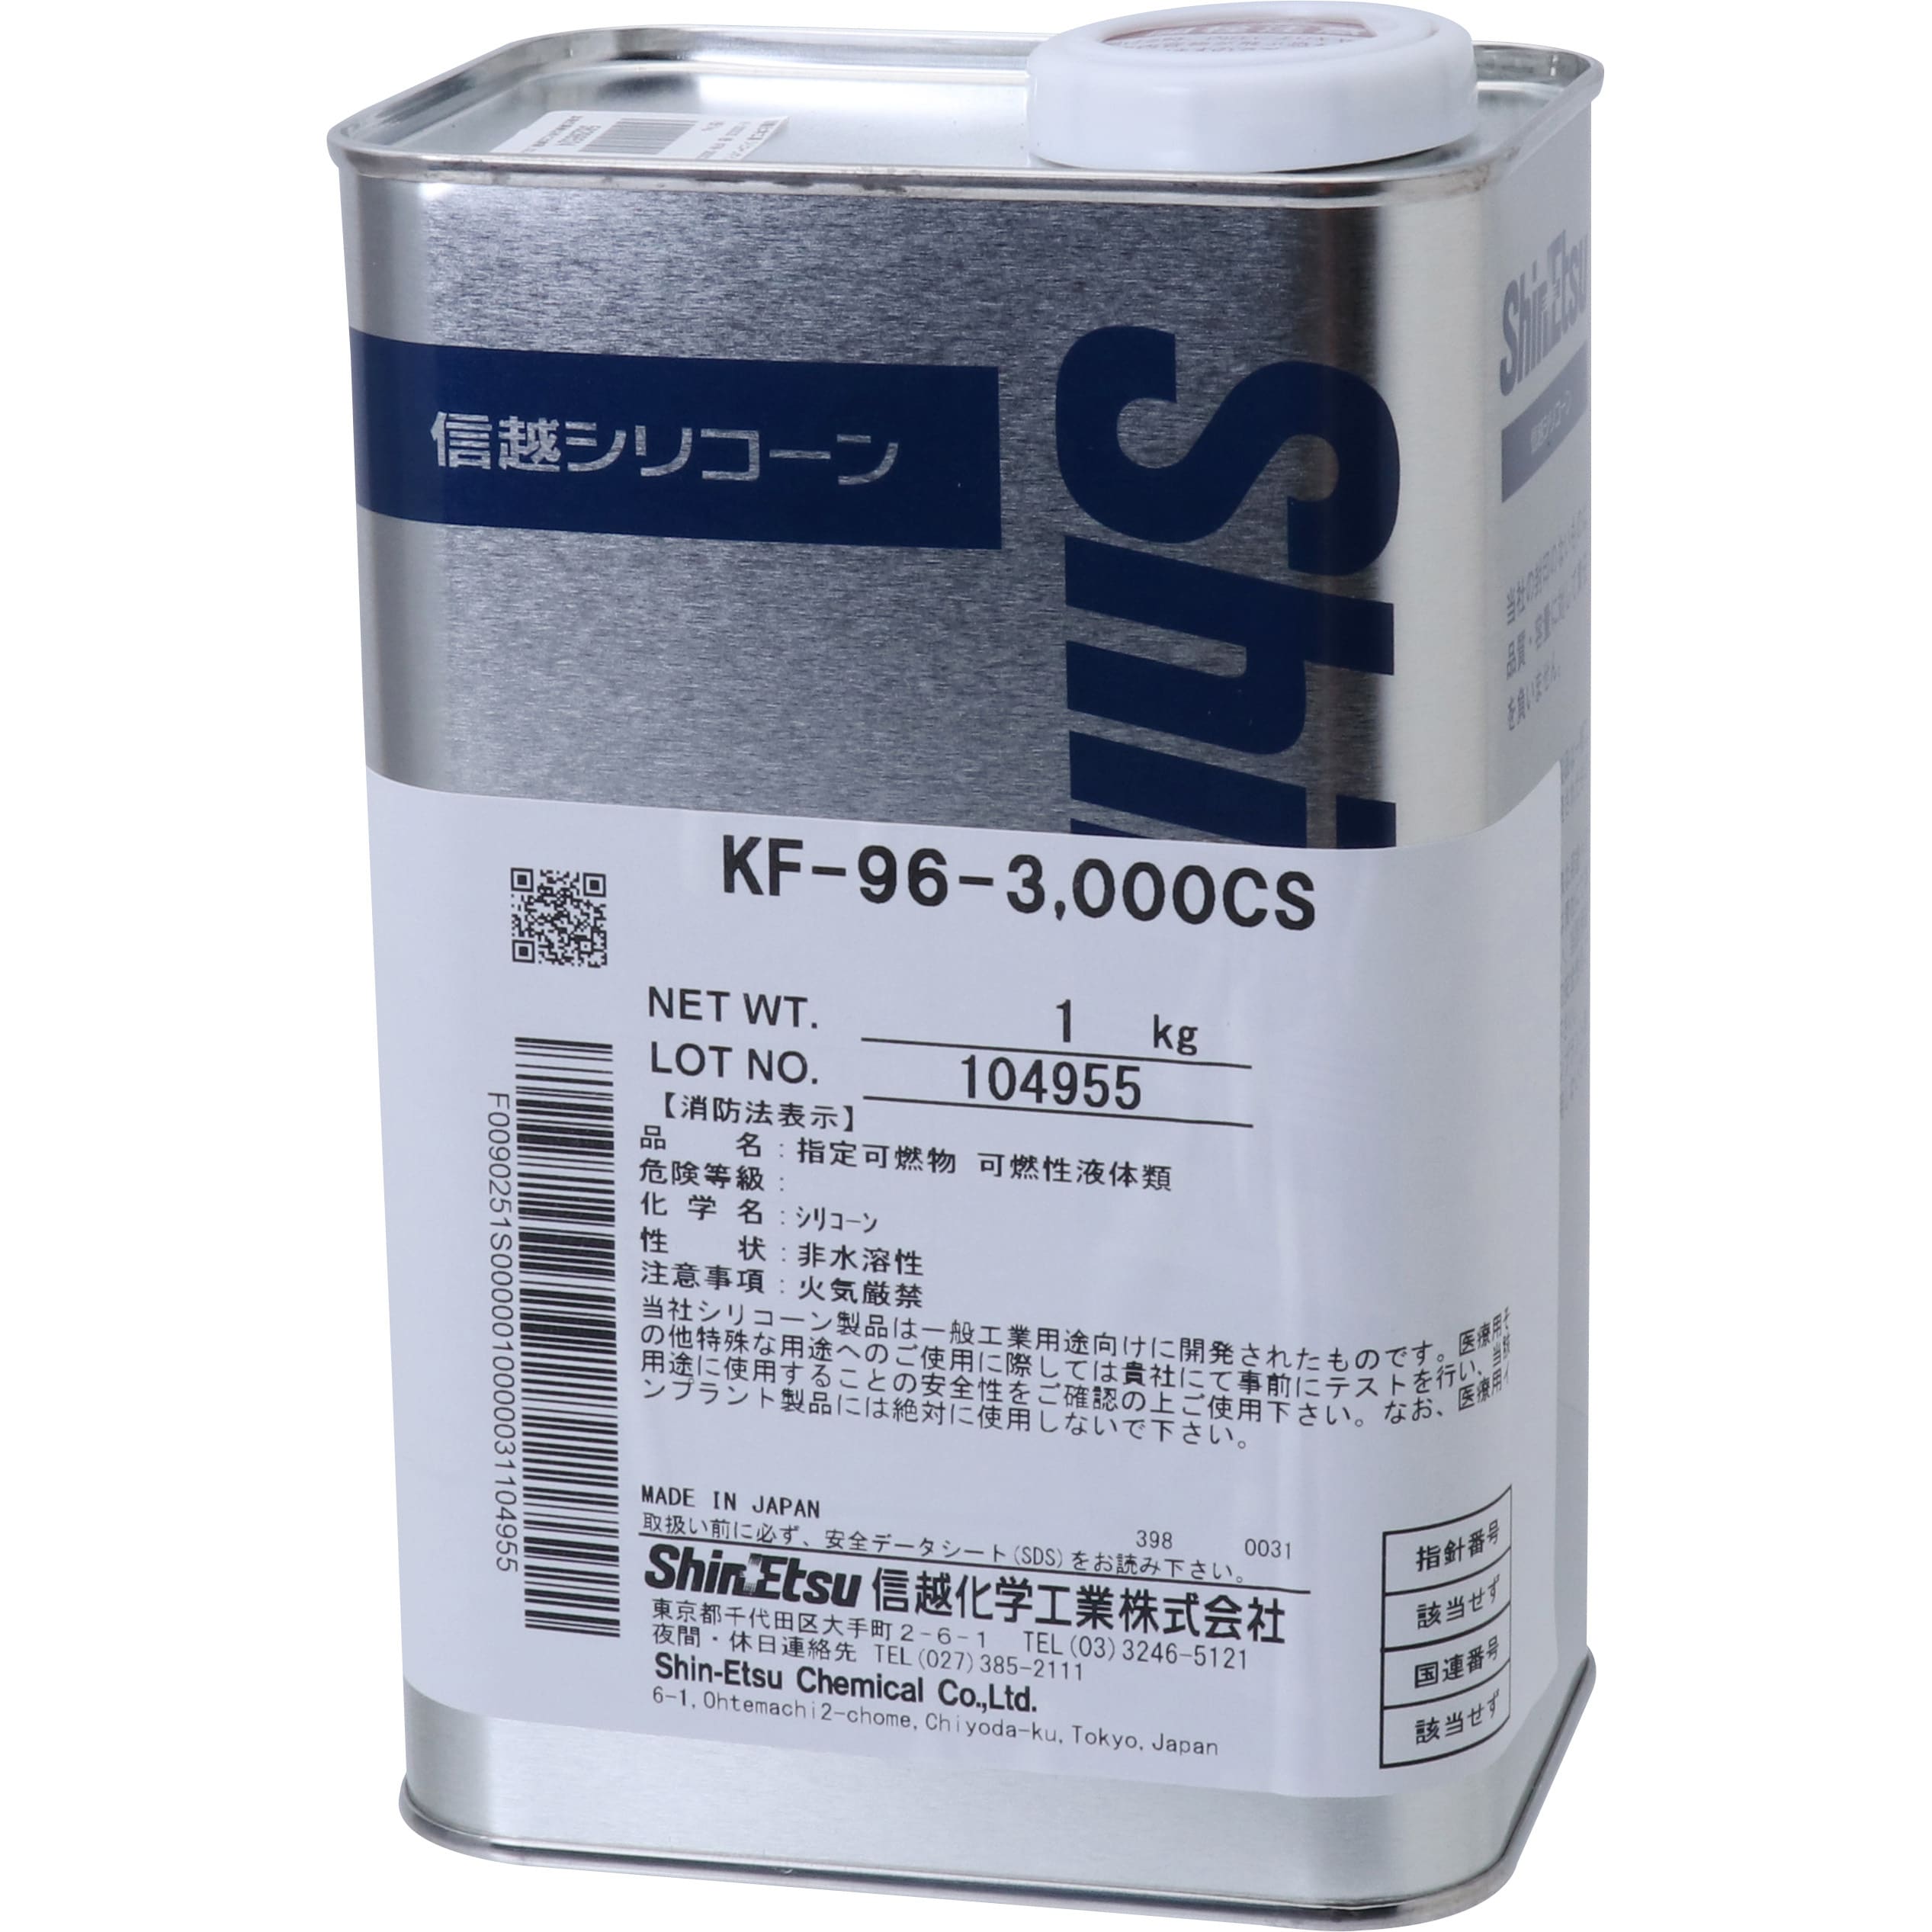 大人気の ホクショー商事 機械要素店信越化学工業 KF-96-50CS-16 シリコーンオイル 一般用 50CS 16kg KF9650CS16 